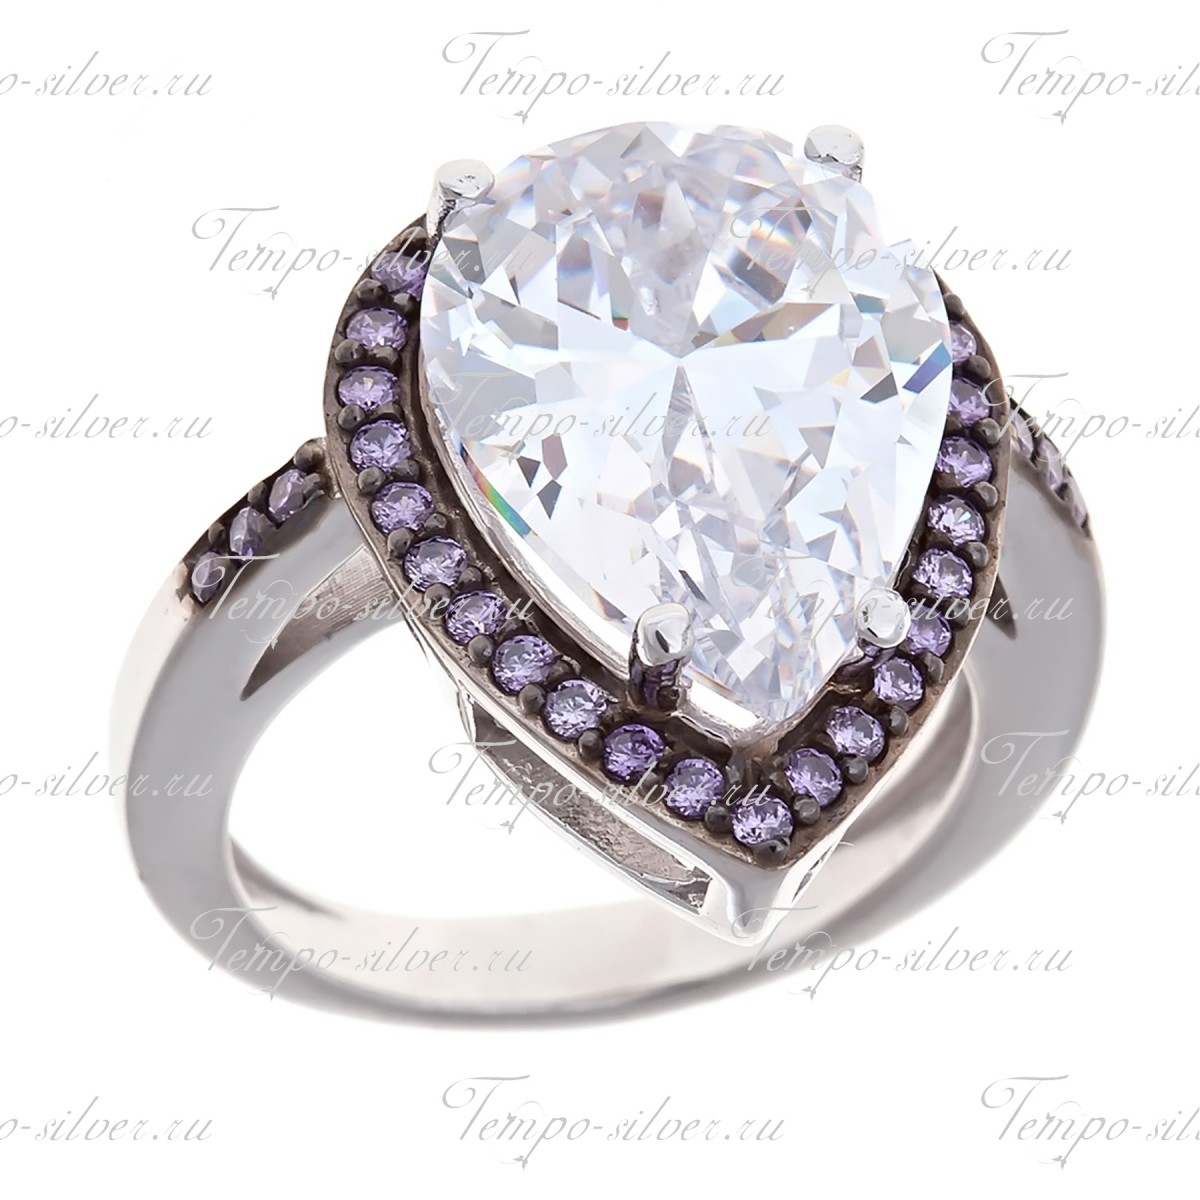 Кольцо серебряное в форме капли с большим камнем и ободком из фиолетовых камней